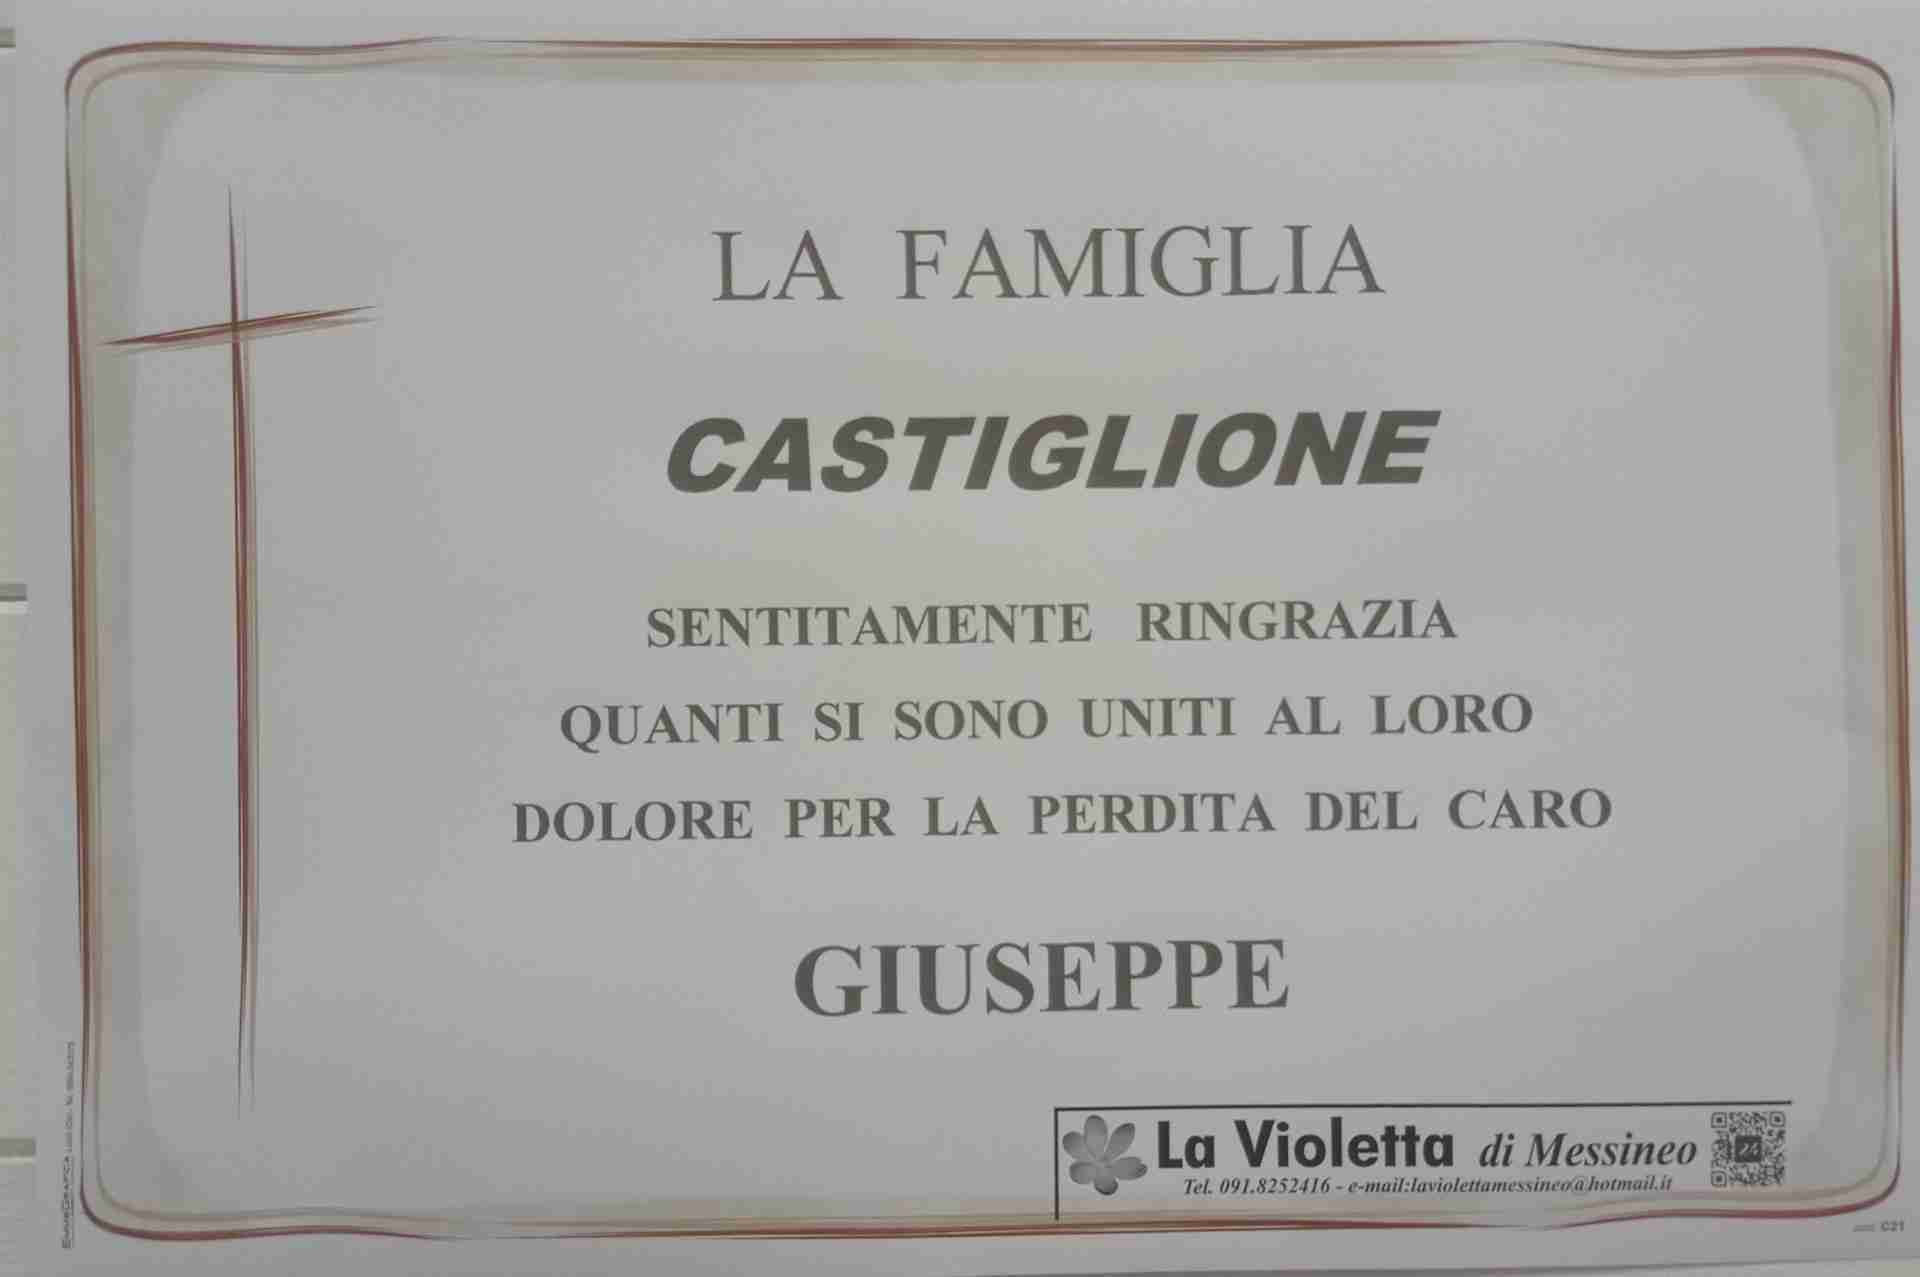 Castiglione Giuseppe